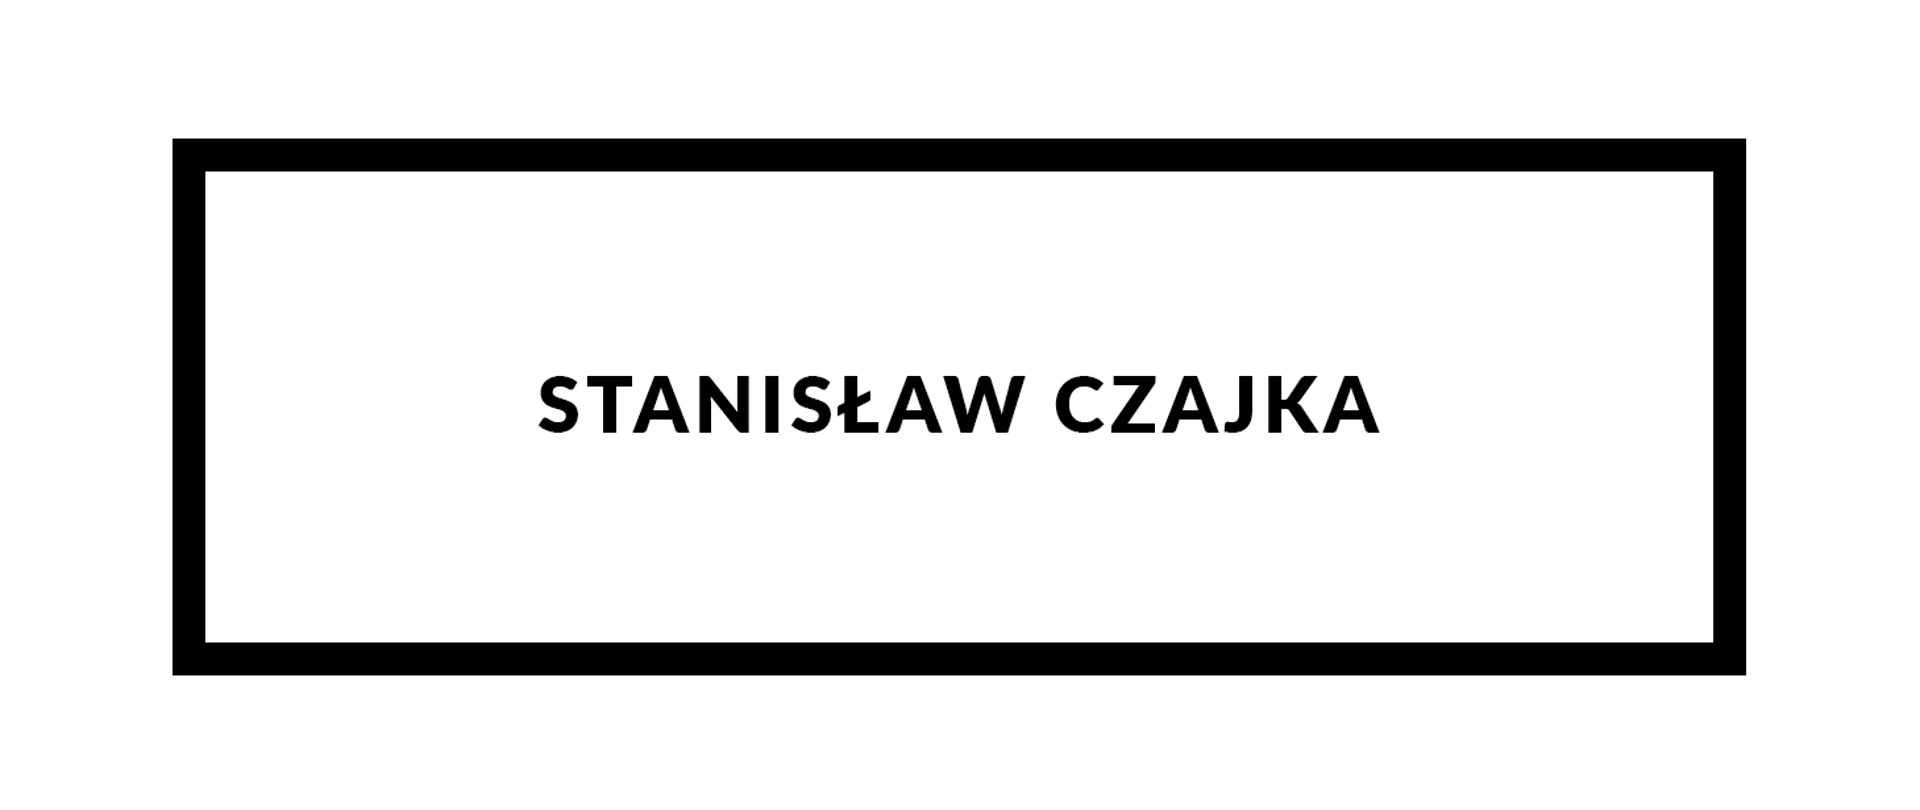 Grafika na białym tle przedstawiająca na środku czarny napis "Stanisław Czajka" otoczony czarną prostokątną ramką